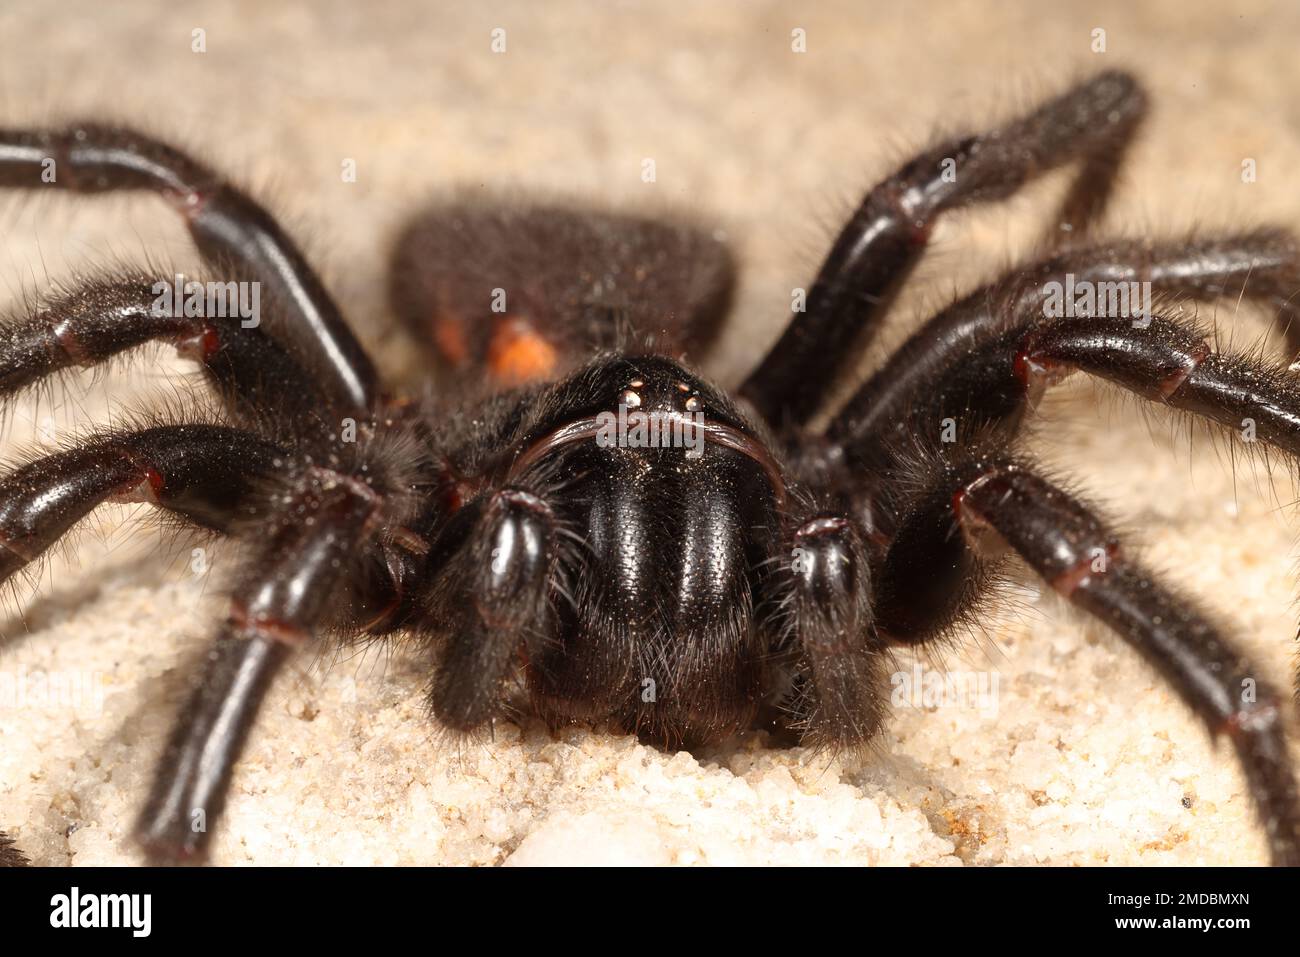 Sydney Funnel Web Spider très venimeux Banque D'Images